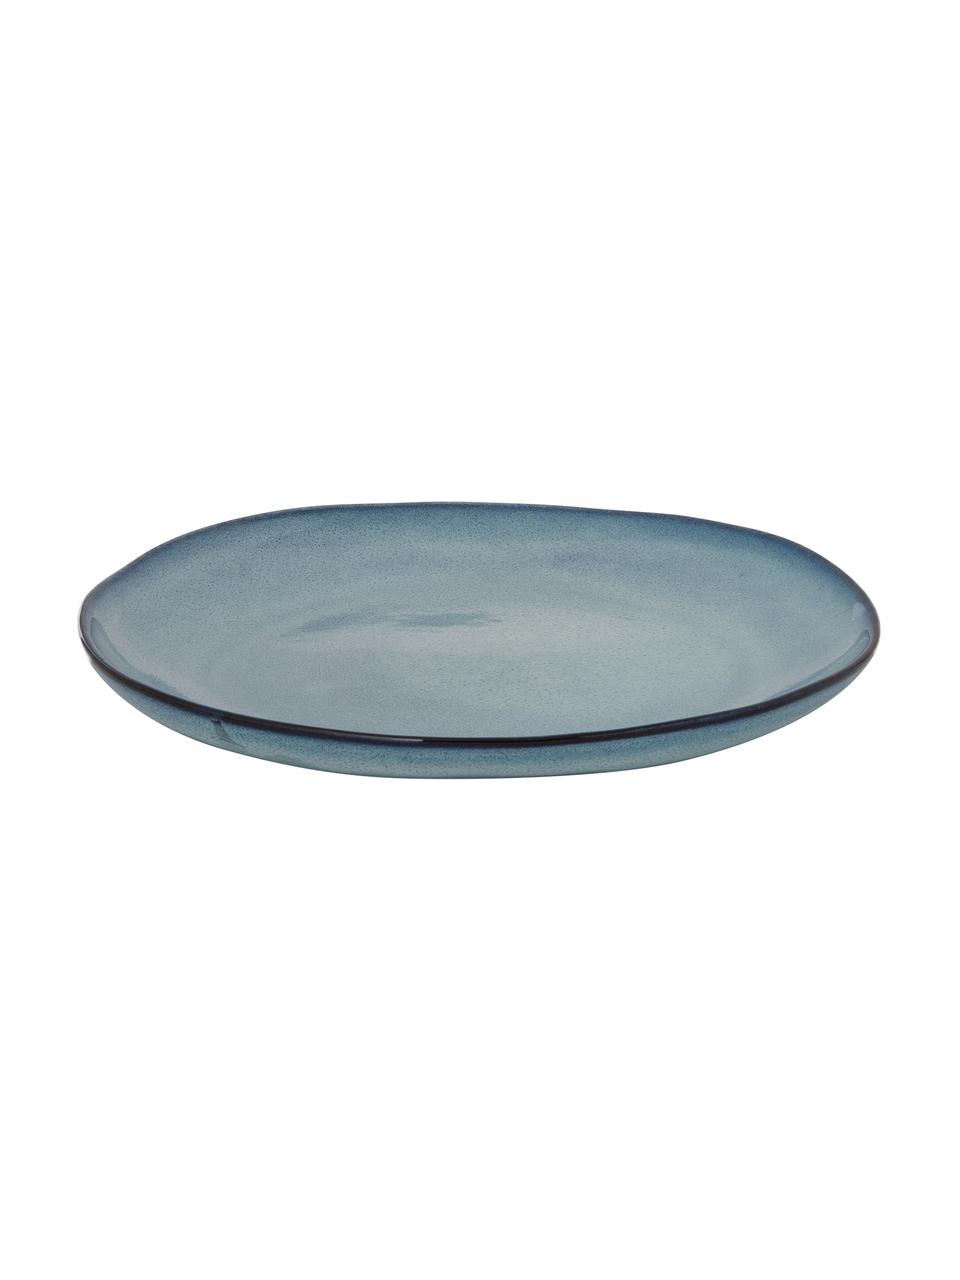 Assiette plate en grès bleu gris faite main Sandrine, Grès cérame, Tons bleus, Ø 22 x haut. 2 cm